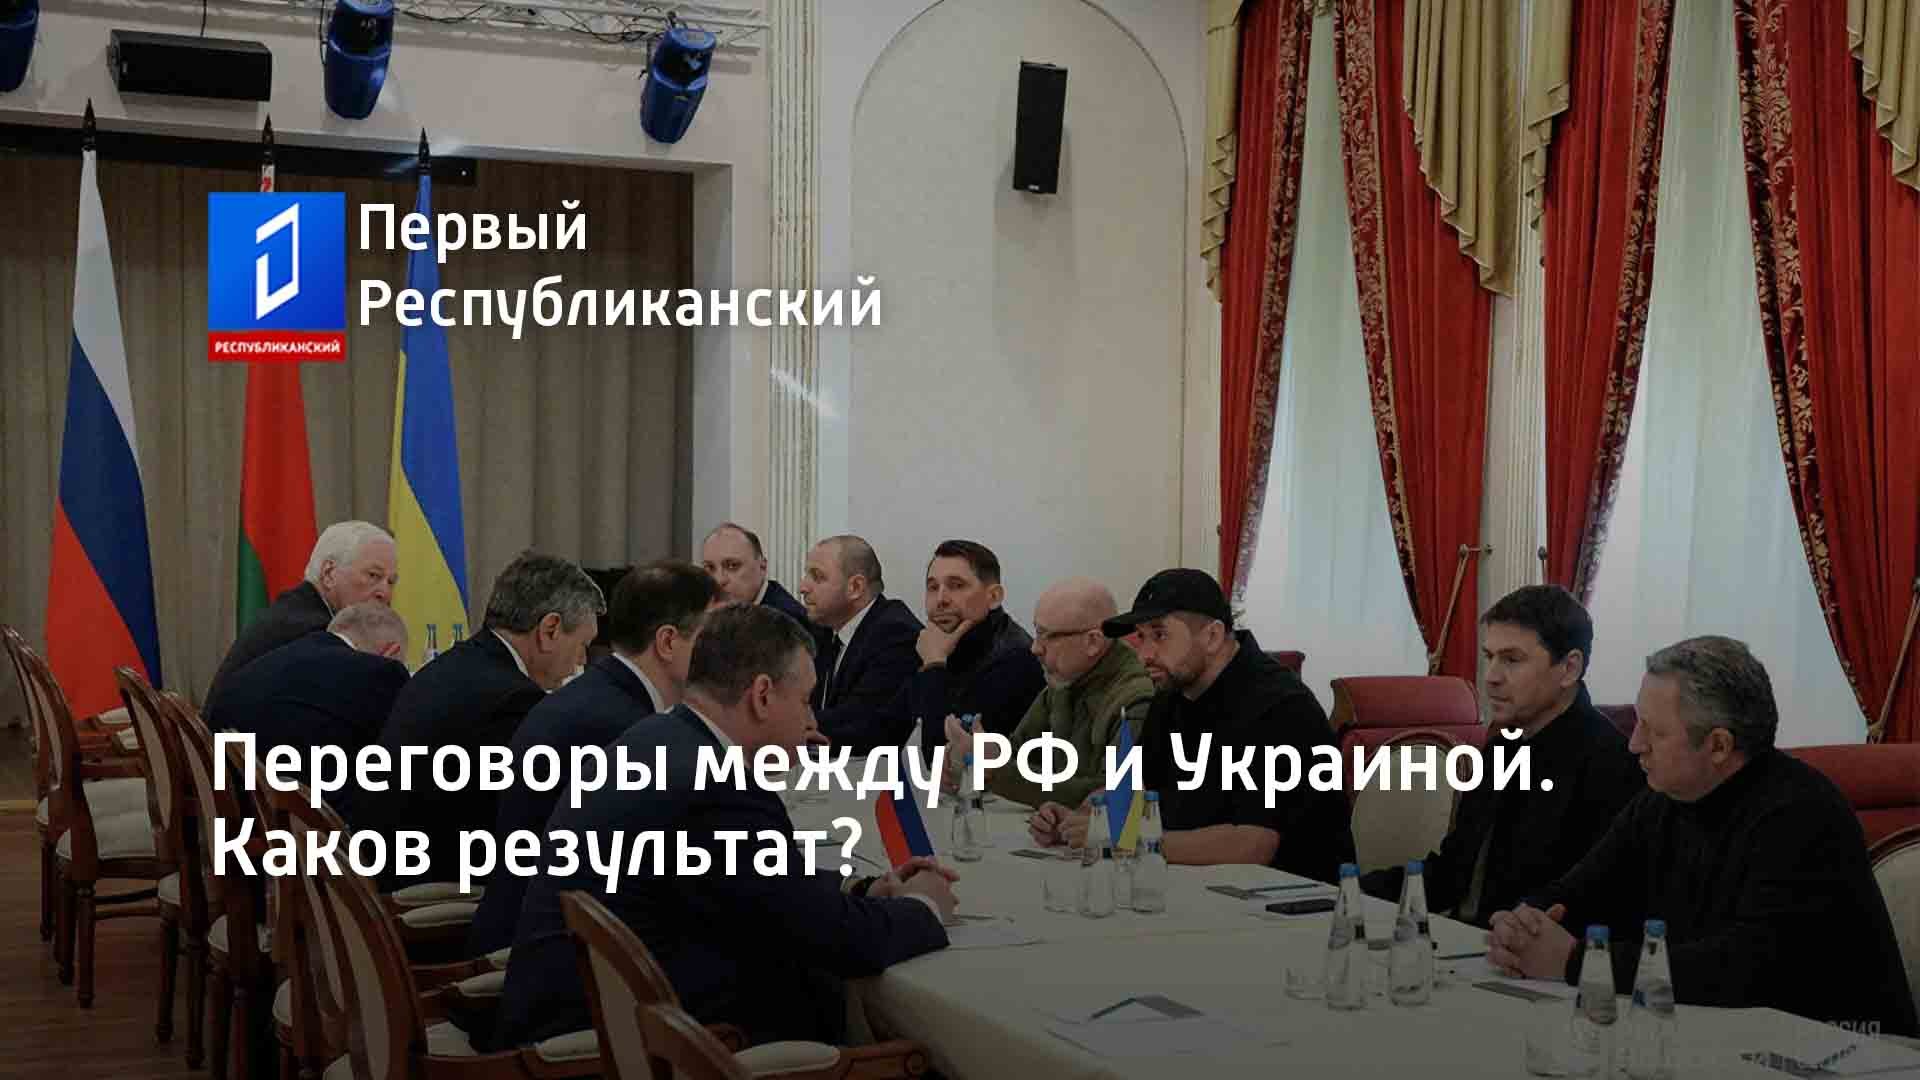 Результаты переговоров между. Переговоры между Россией и Украиной. Переговоры Российской и украинской делегаций. Переговоры между Россией и Украиной 2022. Вторая встреча между Украиной и Россией.